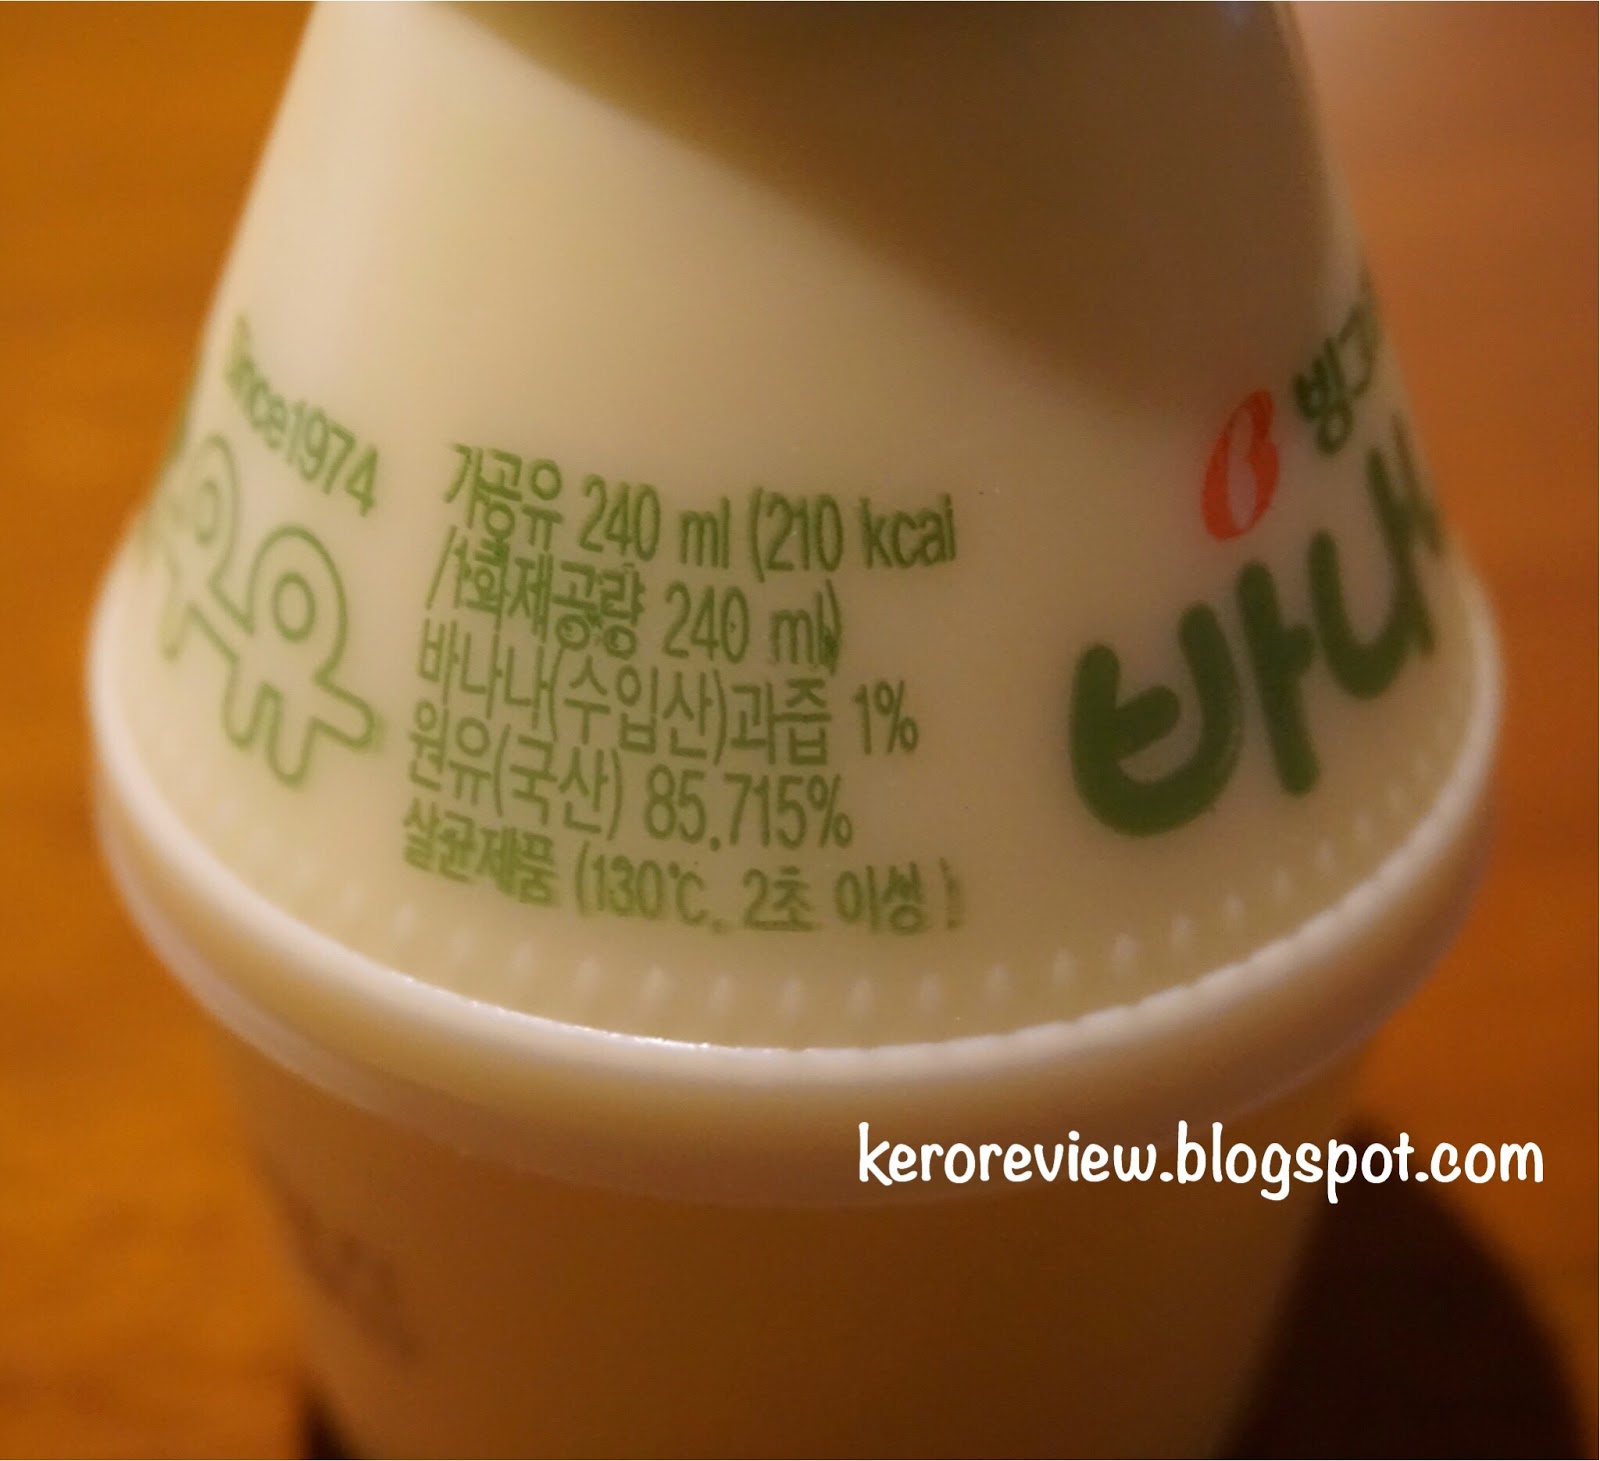 รีวิว บิงกือเร นมกล้วยเกาหลี นมพาสเจอร์ไรซ์ รสกล้วย (CR) Review Korean Banana Flavored Pasteurized Milk, Binggrae Brand.